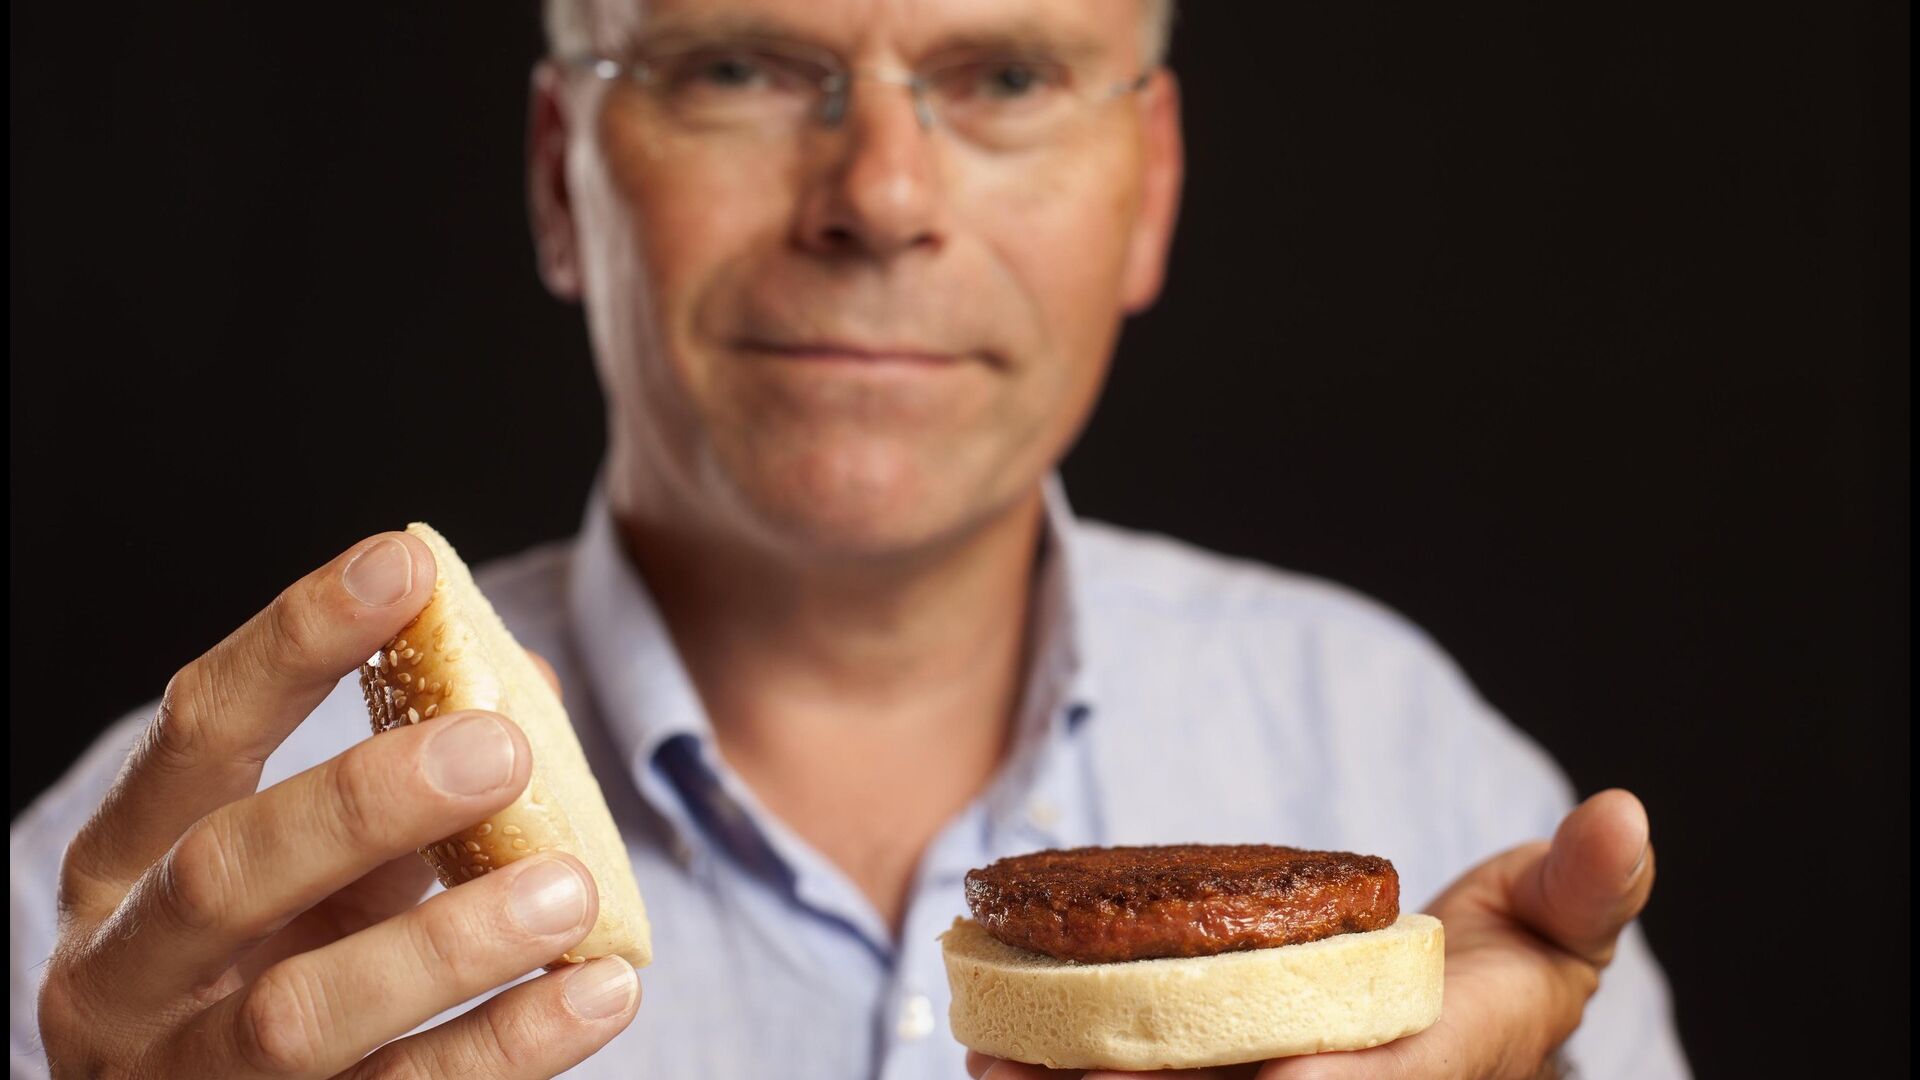 Carne cultivada: Mark Post, o “pai” da carne cultivada, revela ao mundo o primeiro hambúrguer produzido através da agricultura celular